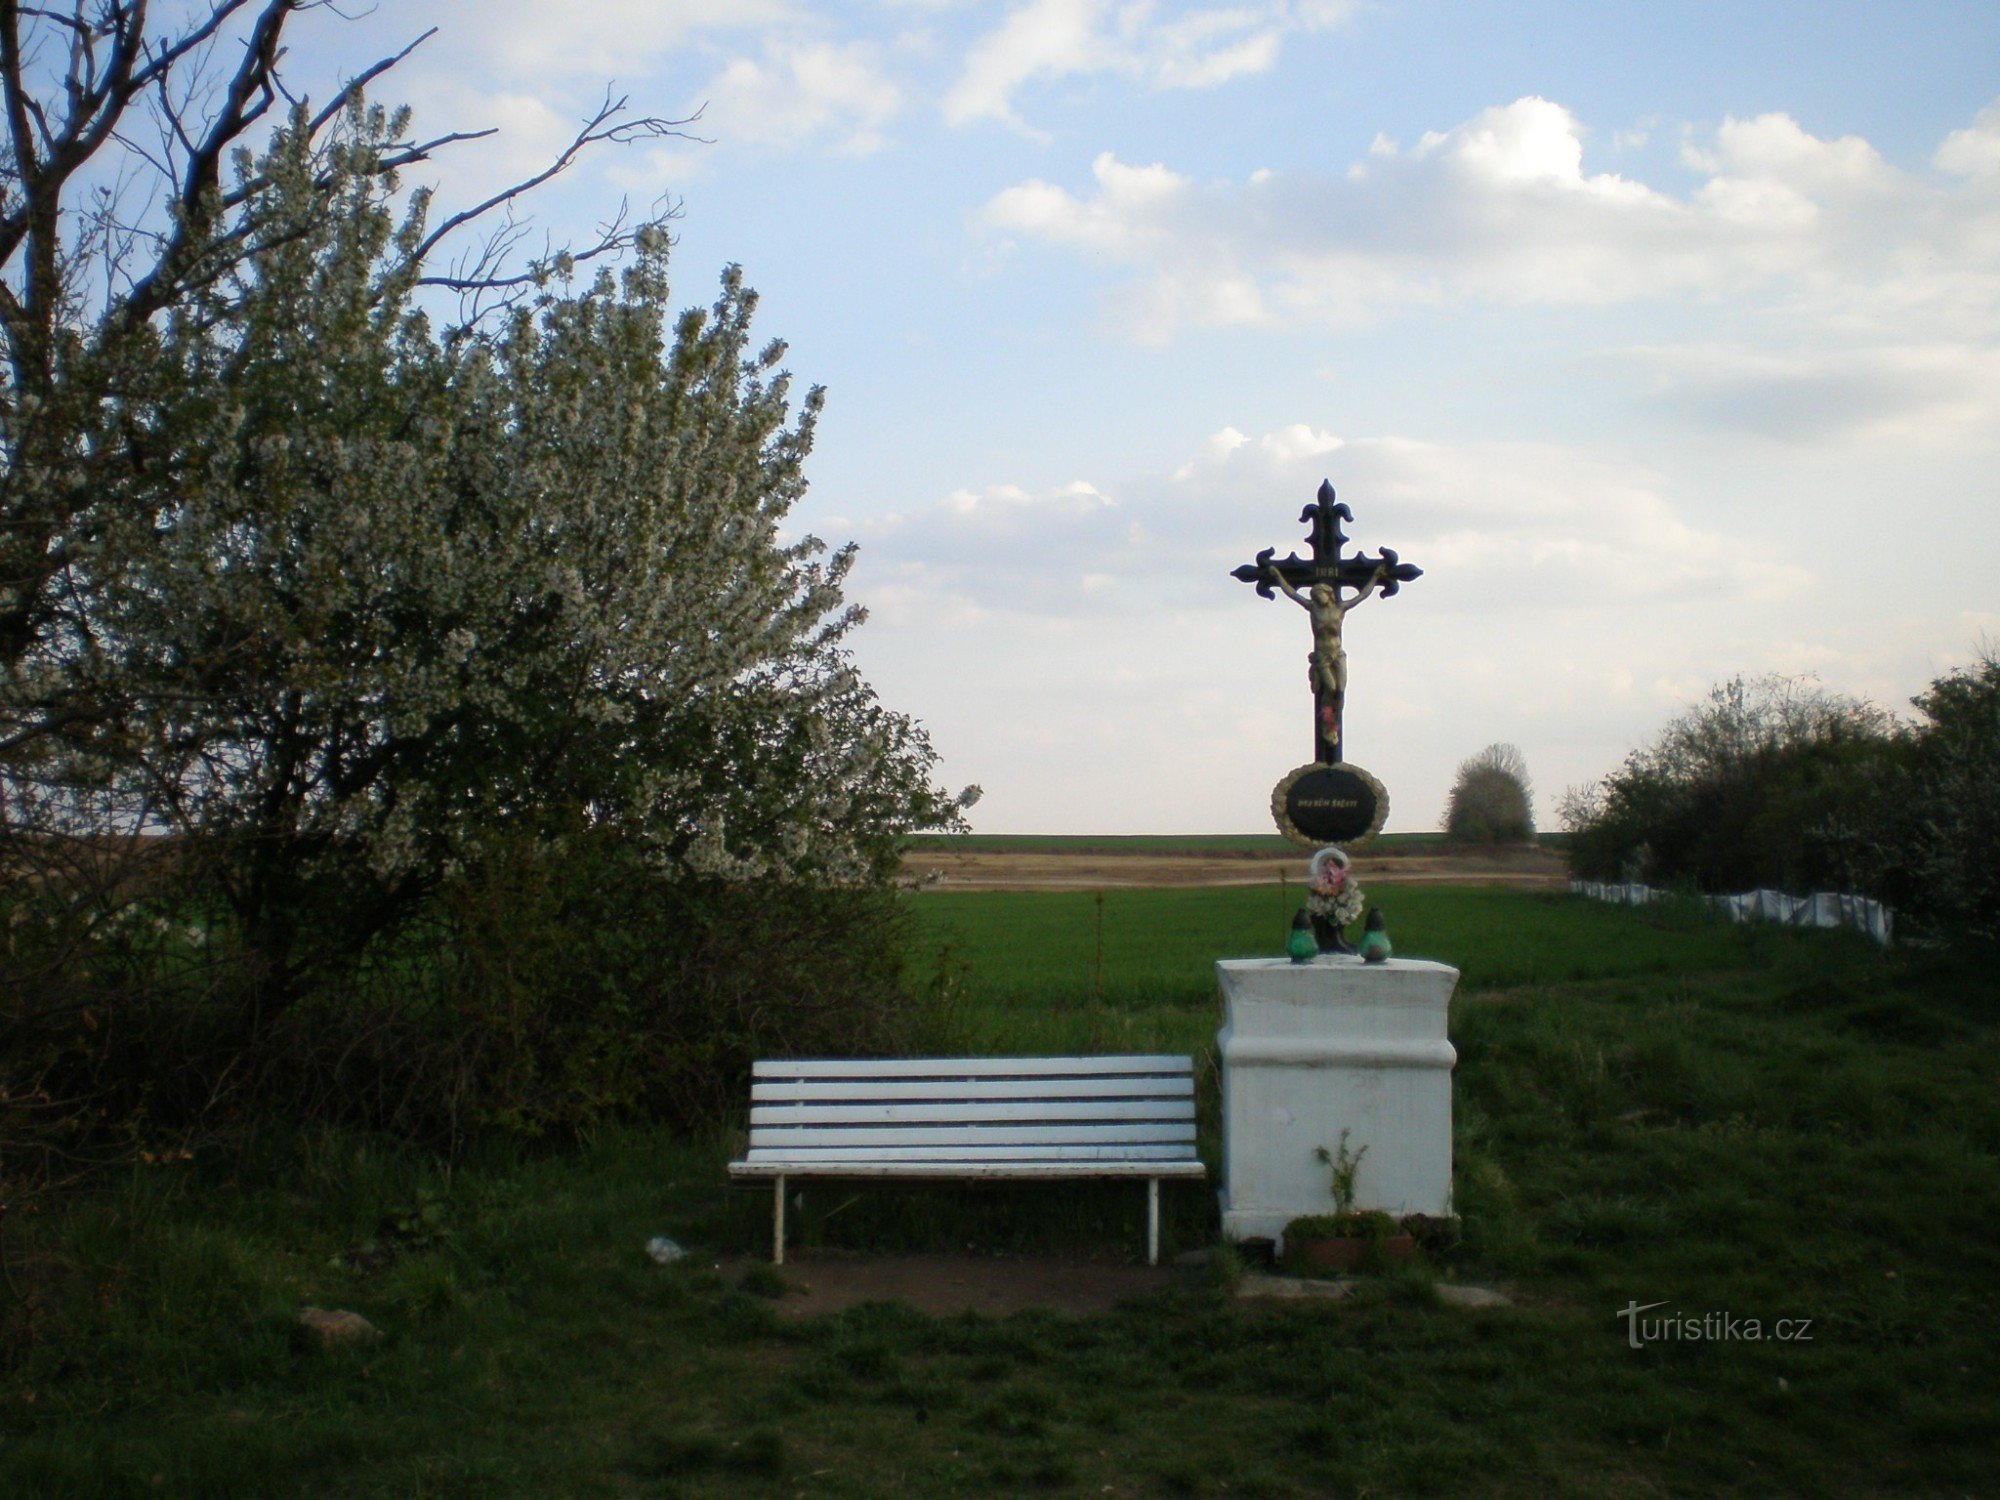 Křížek syd for Cholupice